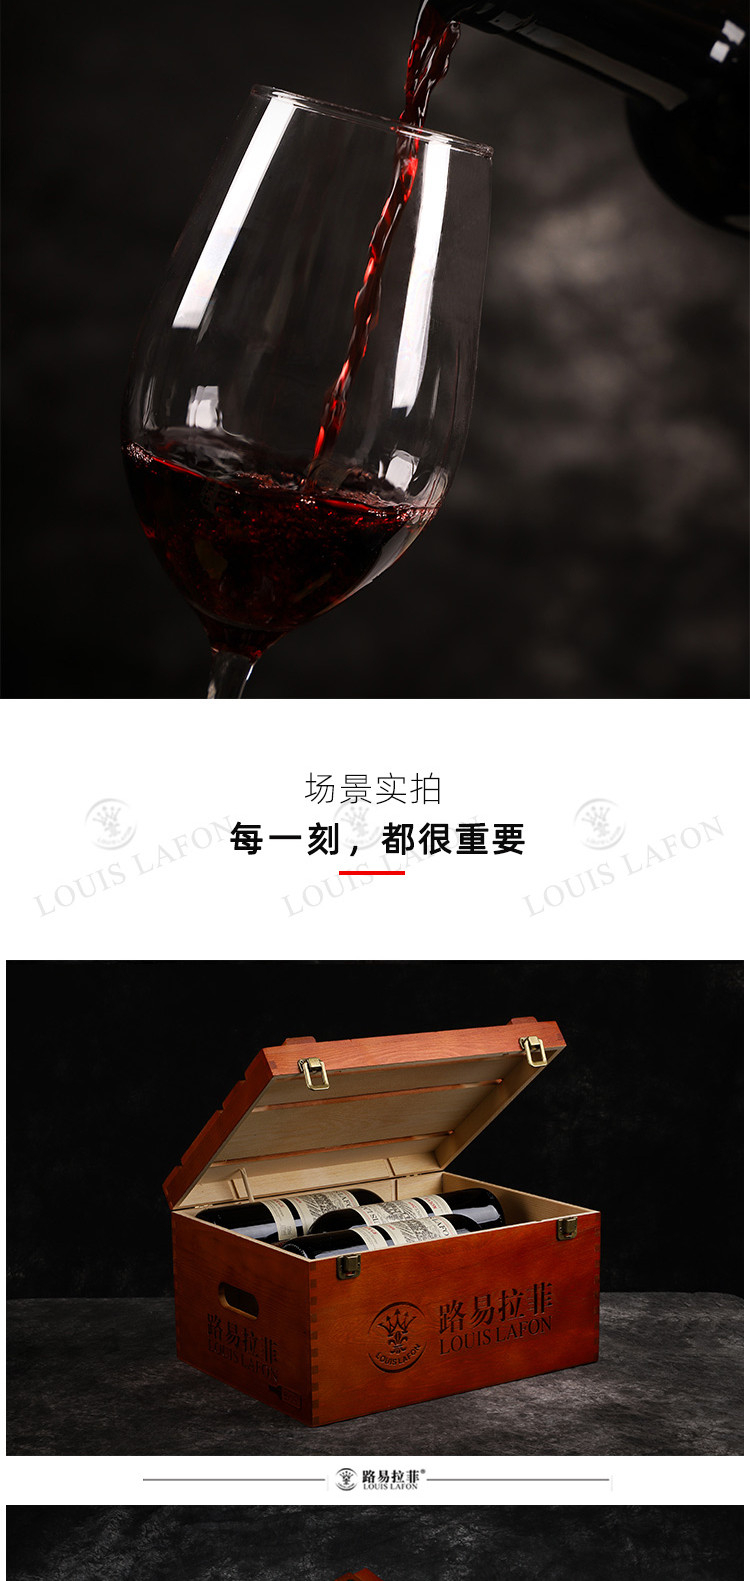 路易拉菲 法国进口2009男爵赤霞珠红酒整箱木箱礼盒干红葡萄酒 原瓶进口